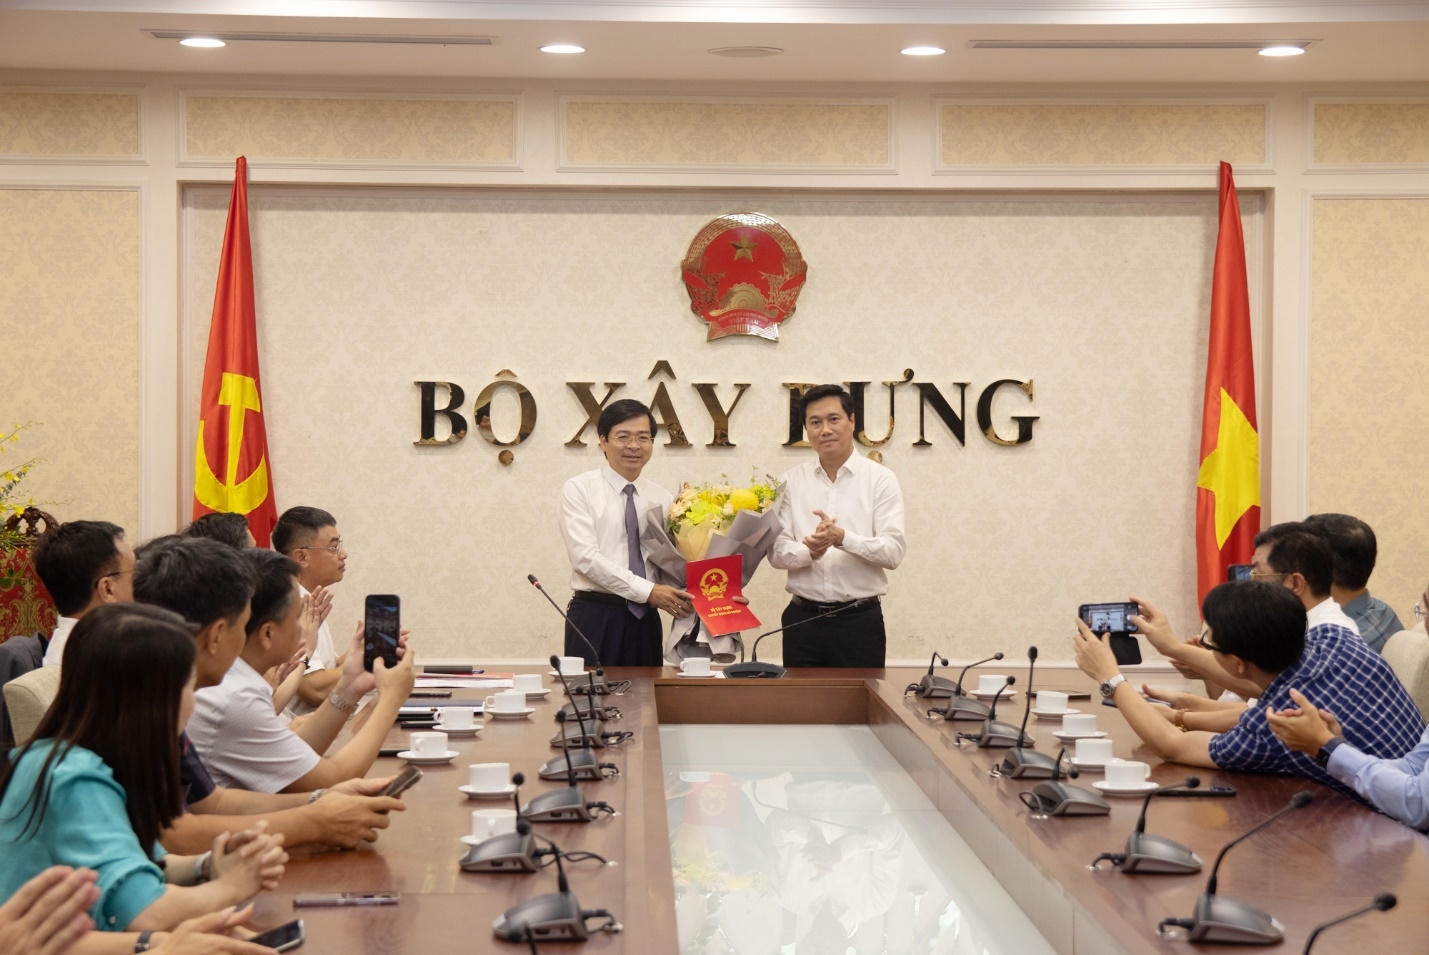 Bộ trưởng Nguyễn Thanh Nghị bổ nhiệm nhân sự mới tại Bộ Xây dựng - Ảnh 1.